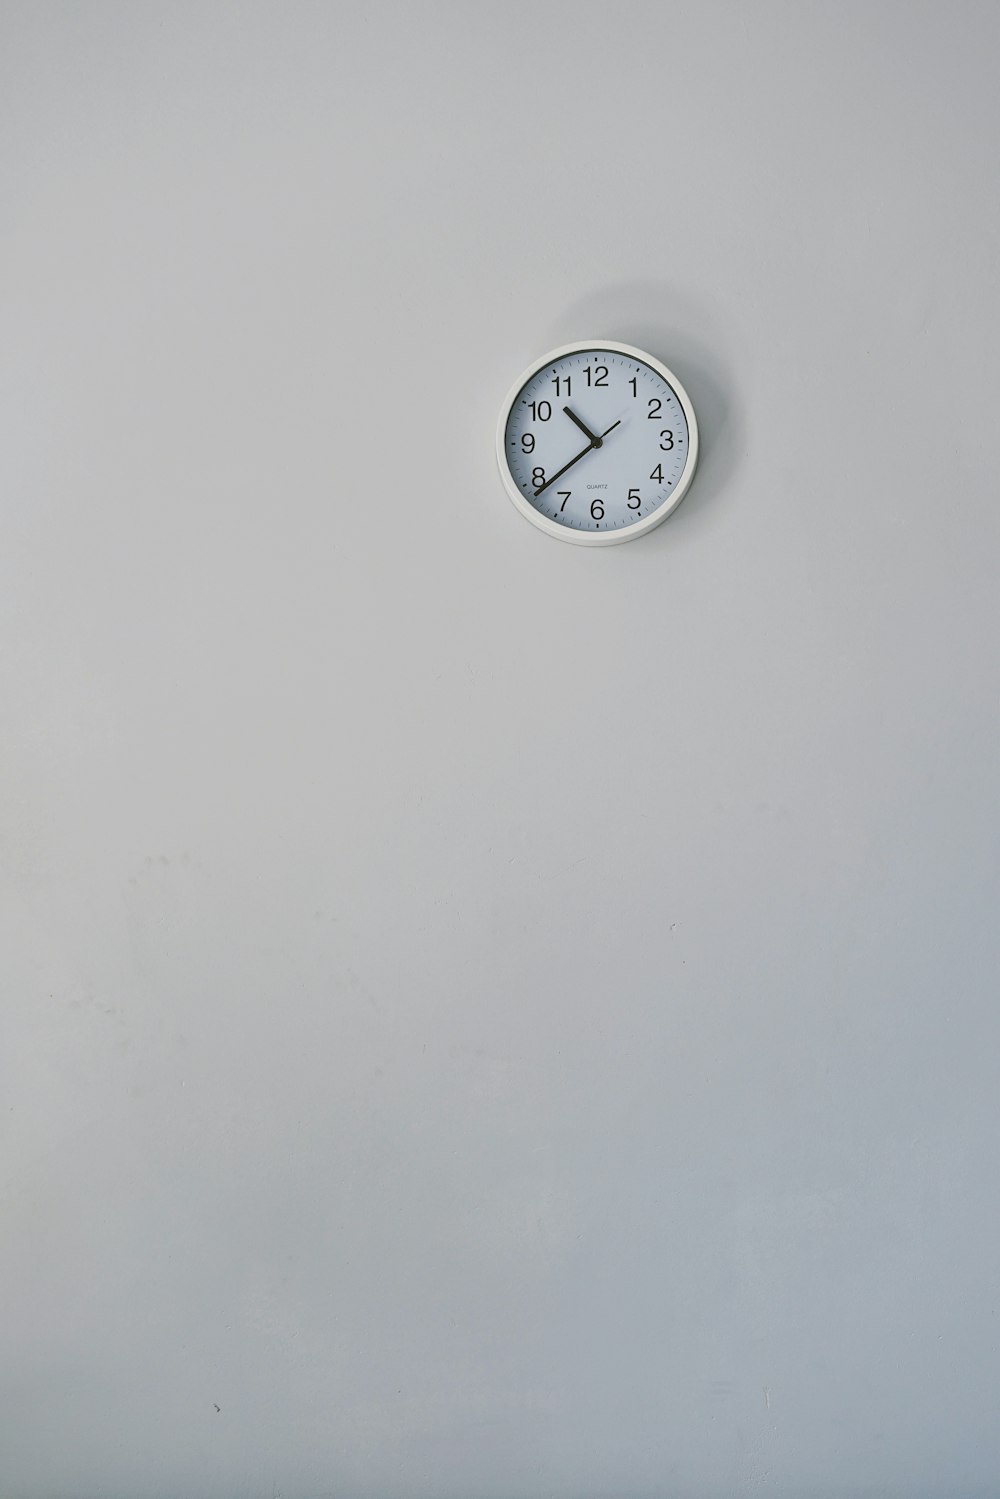 10:38 を表示する丸い白いアナログ壁掛け時計